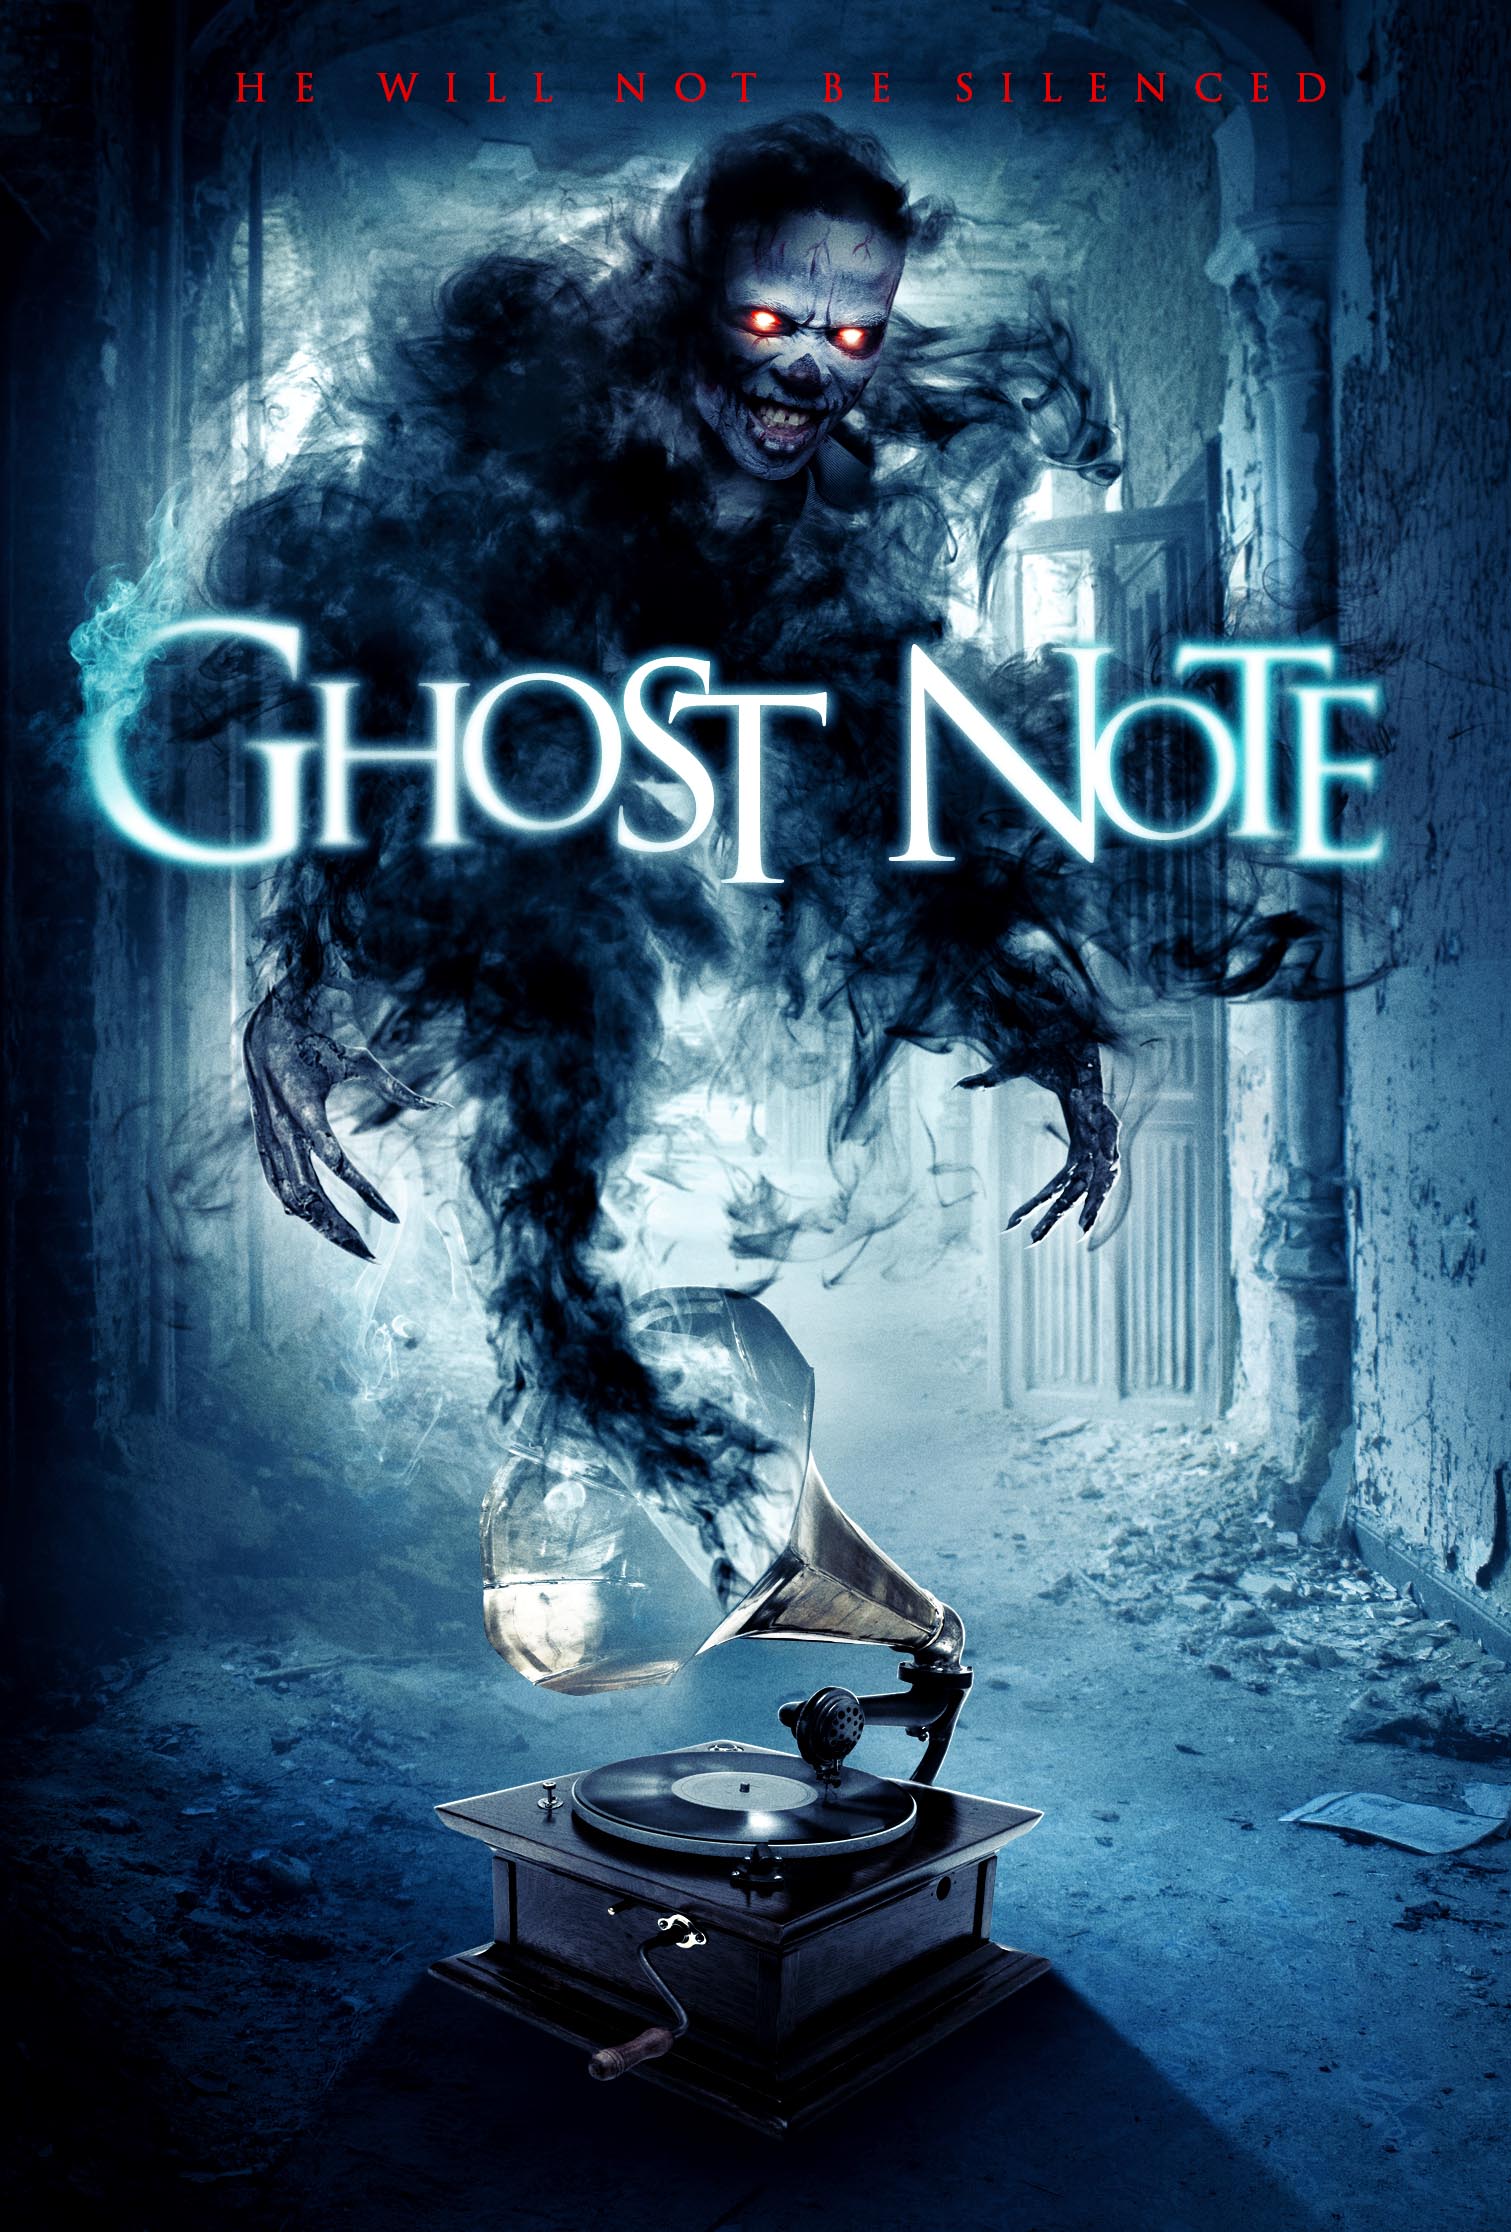 ghostnote movie